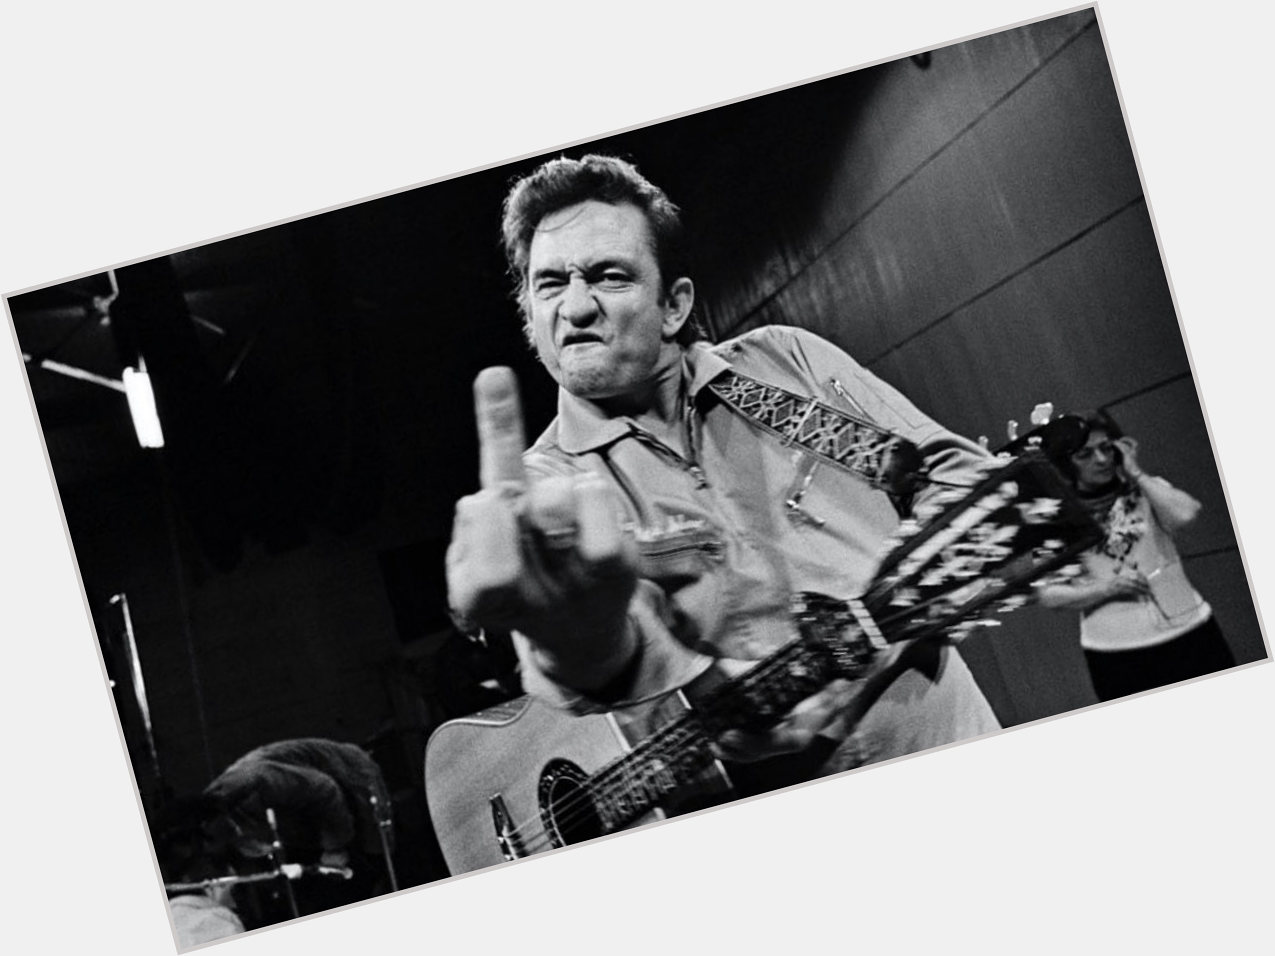 HAPPY BIRTHDAY Johnny Cash! 